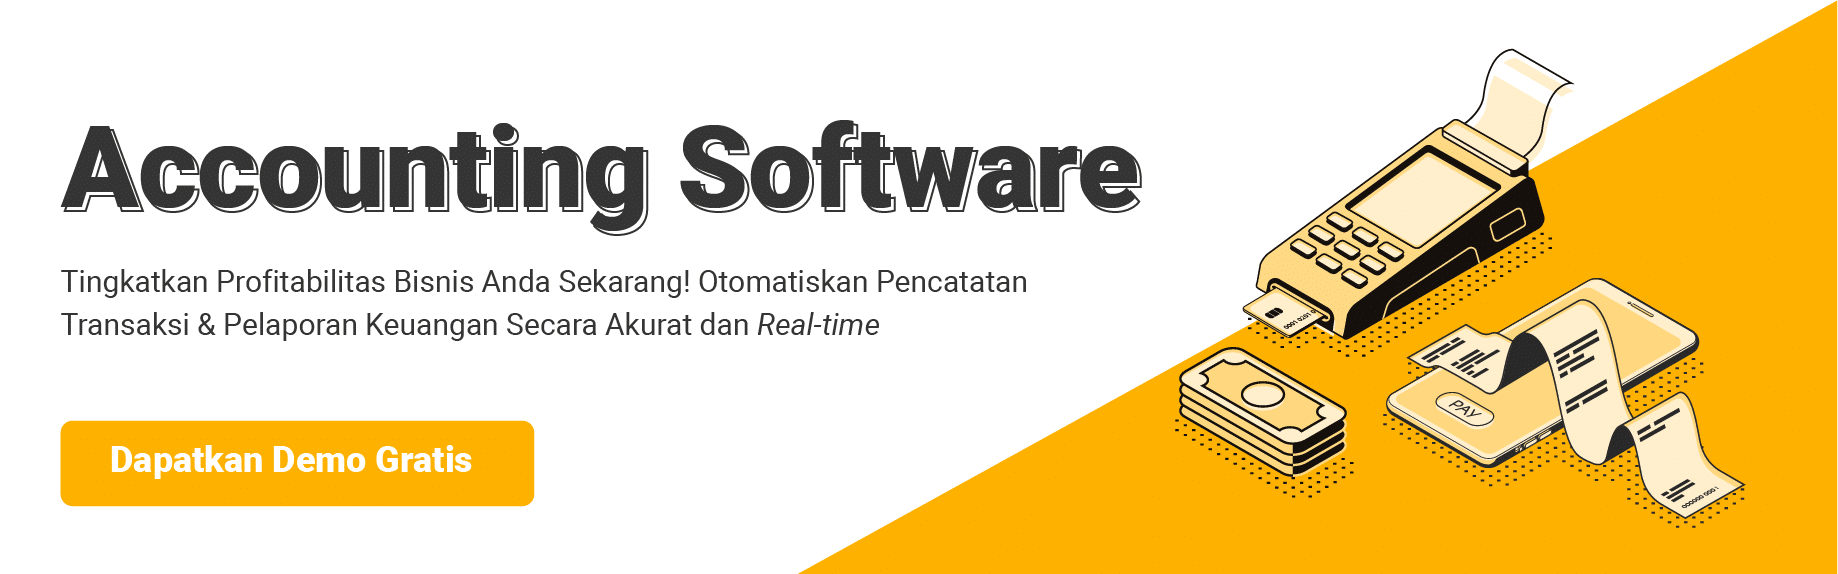 accounting software (https://www.hashmicro.com/id/sistem-akuntansi?utm_source=blog&utm_medium=banner&utm_campaign=software+akuntansi+indonesia)